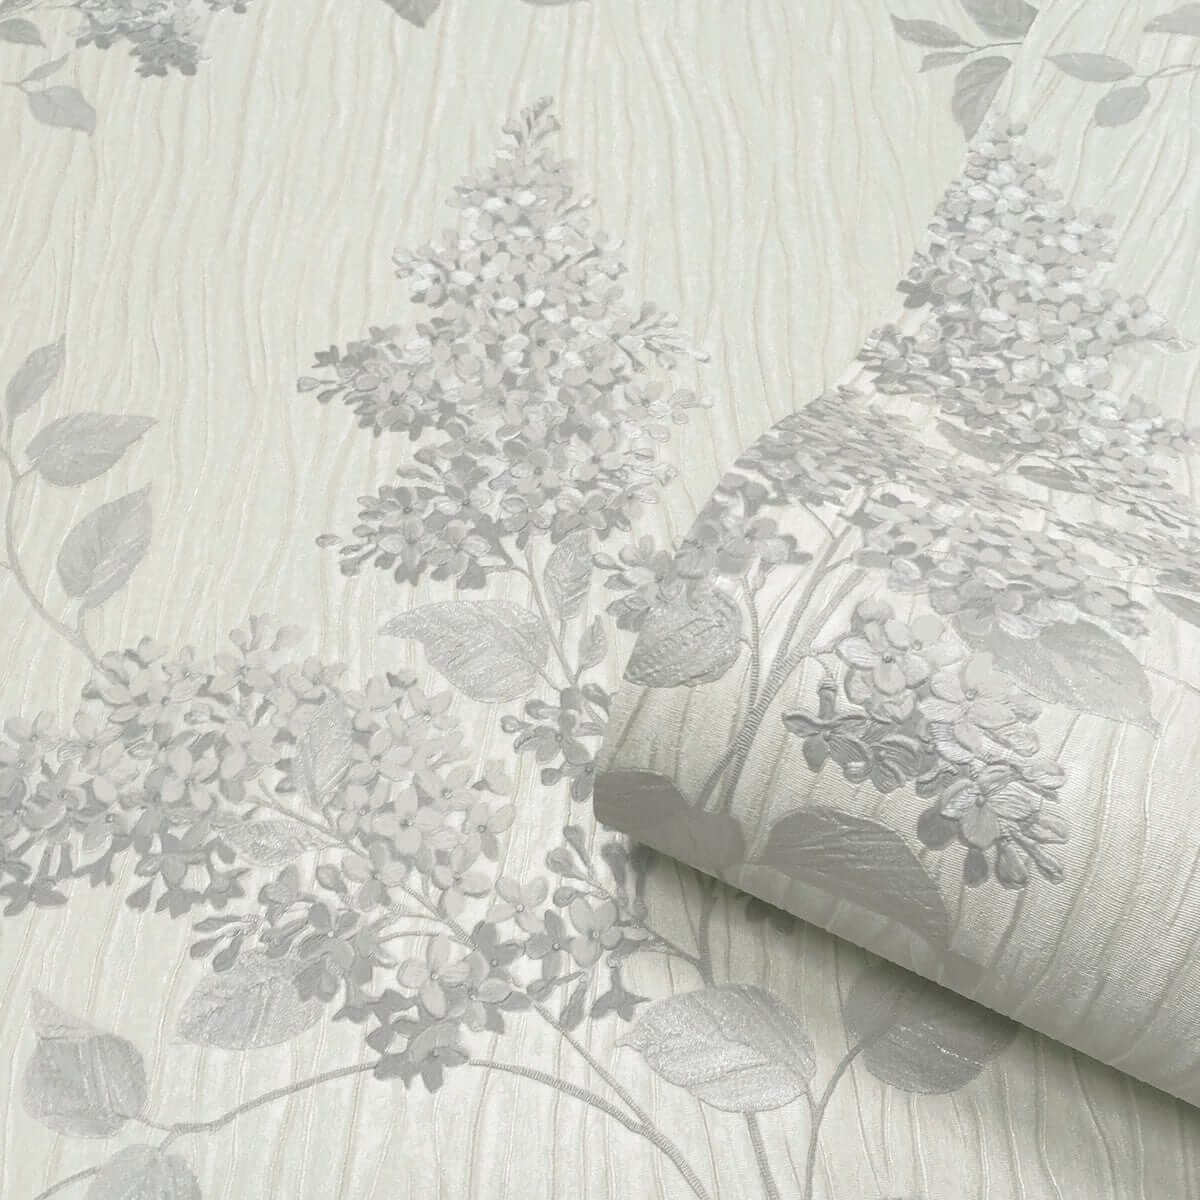 Wallpaper  -  Belgravia Tiffany Fiore Soft Silver Wallpaper - GB41312  -  60002011